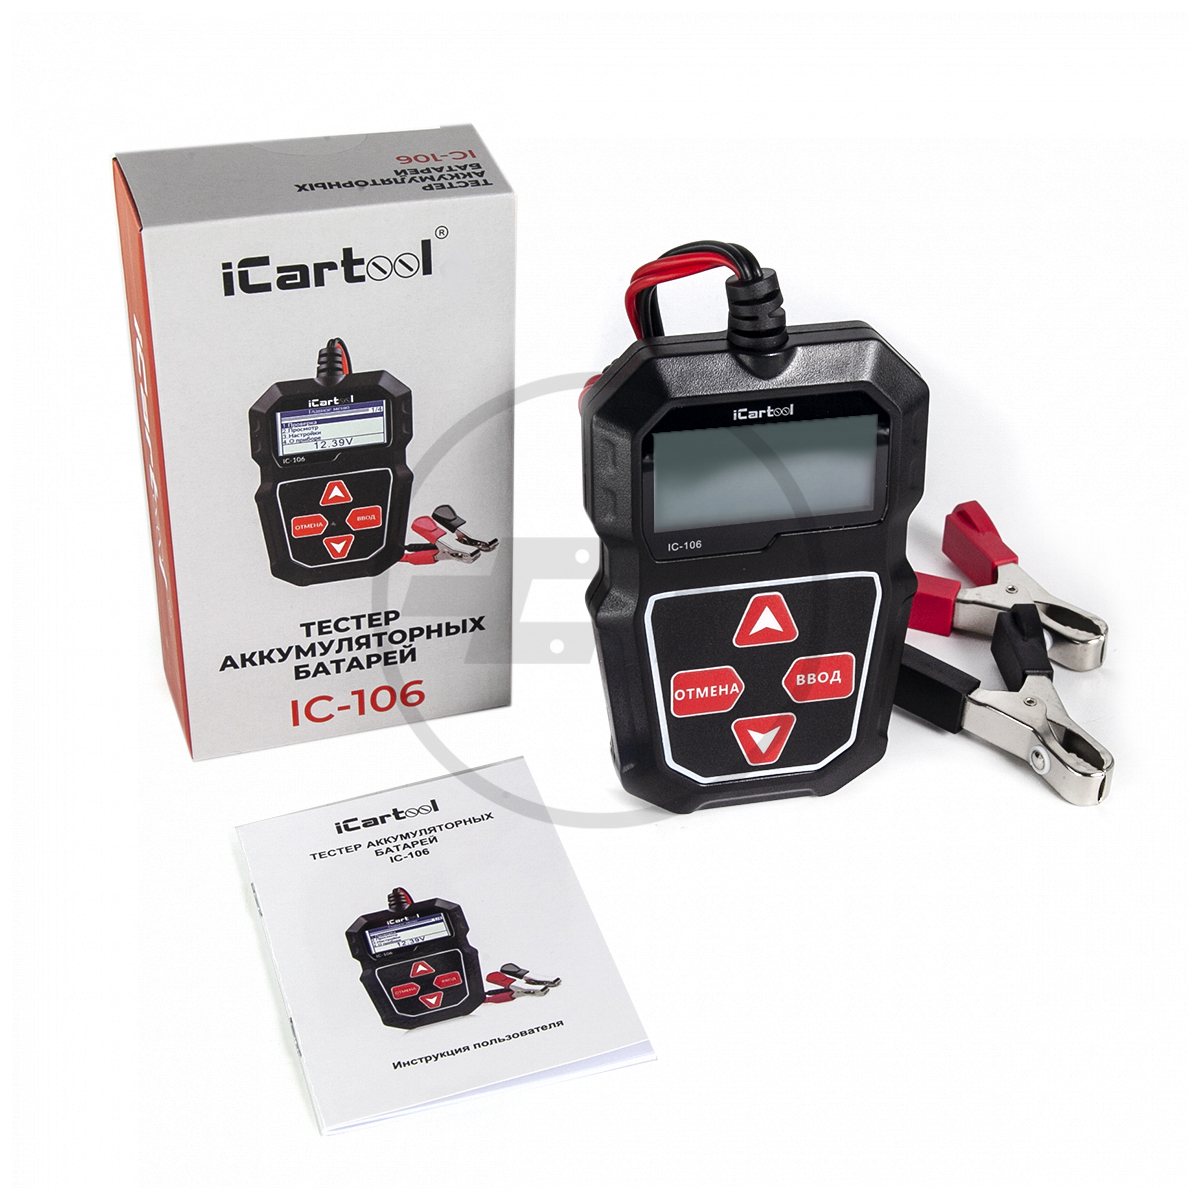 IC-106 Тестер аккумуляторных батарей iCartool IC-106  на сайте .